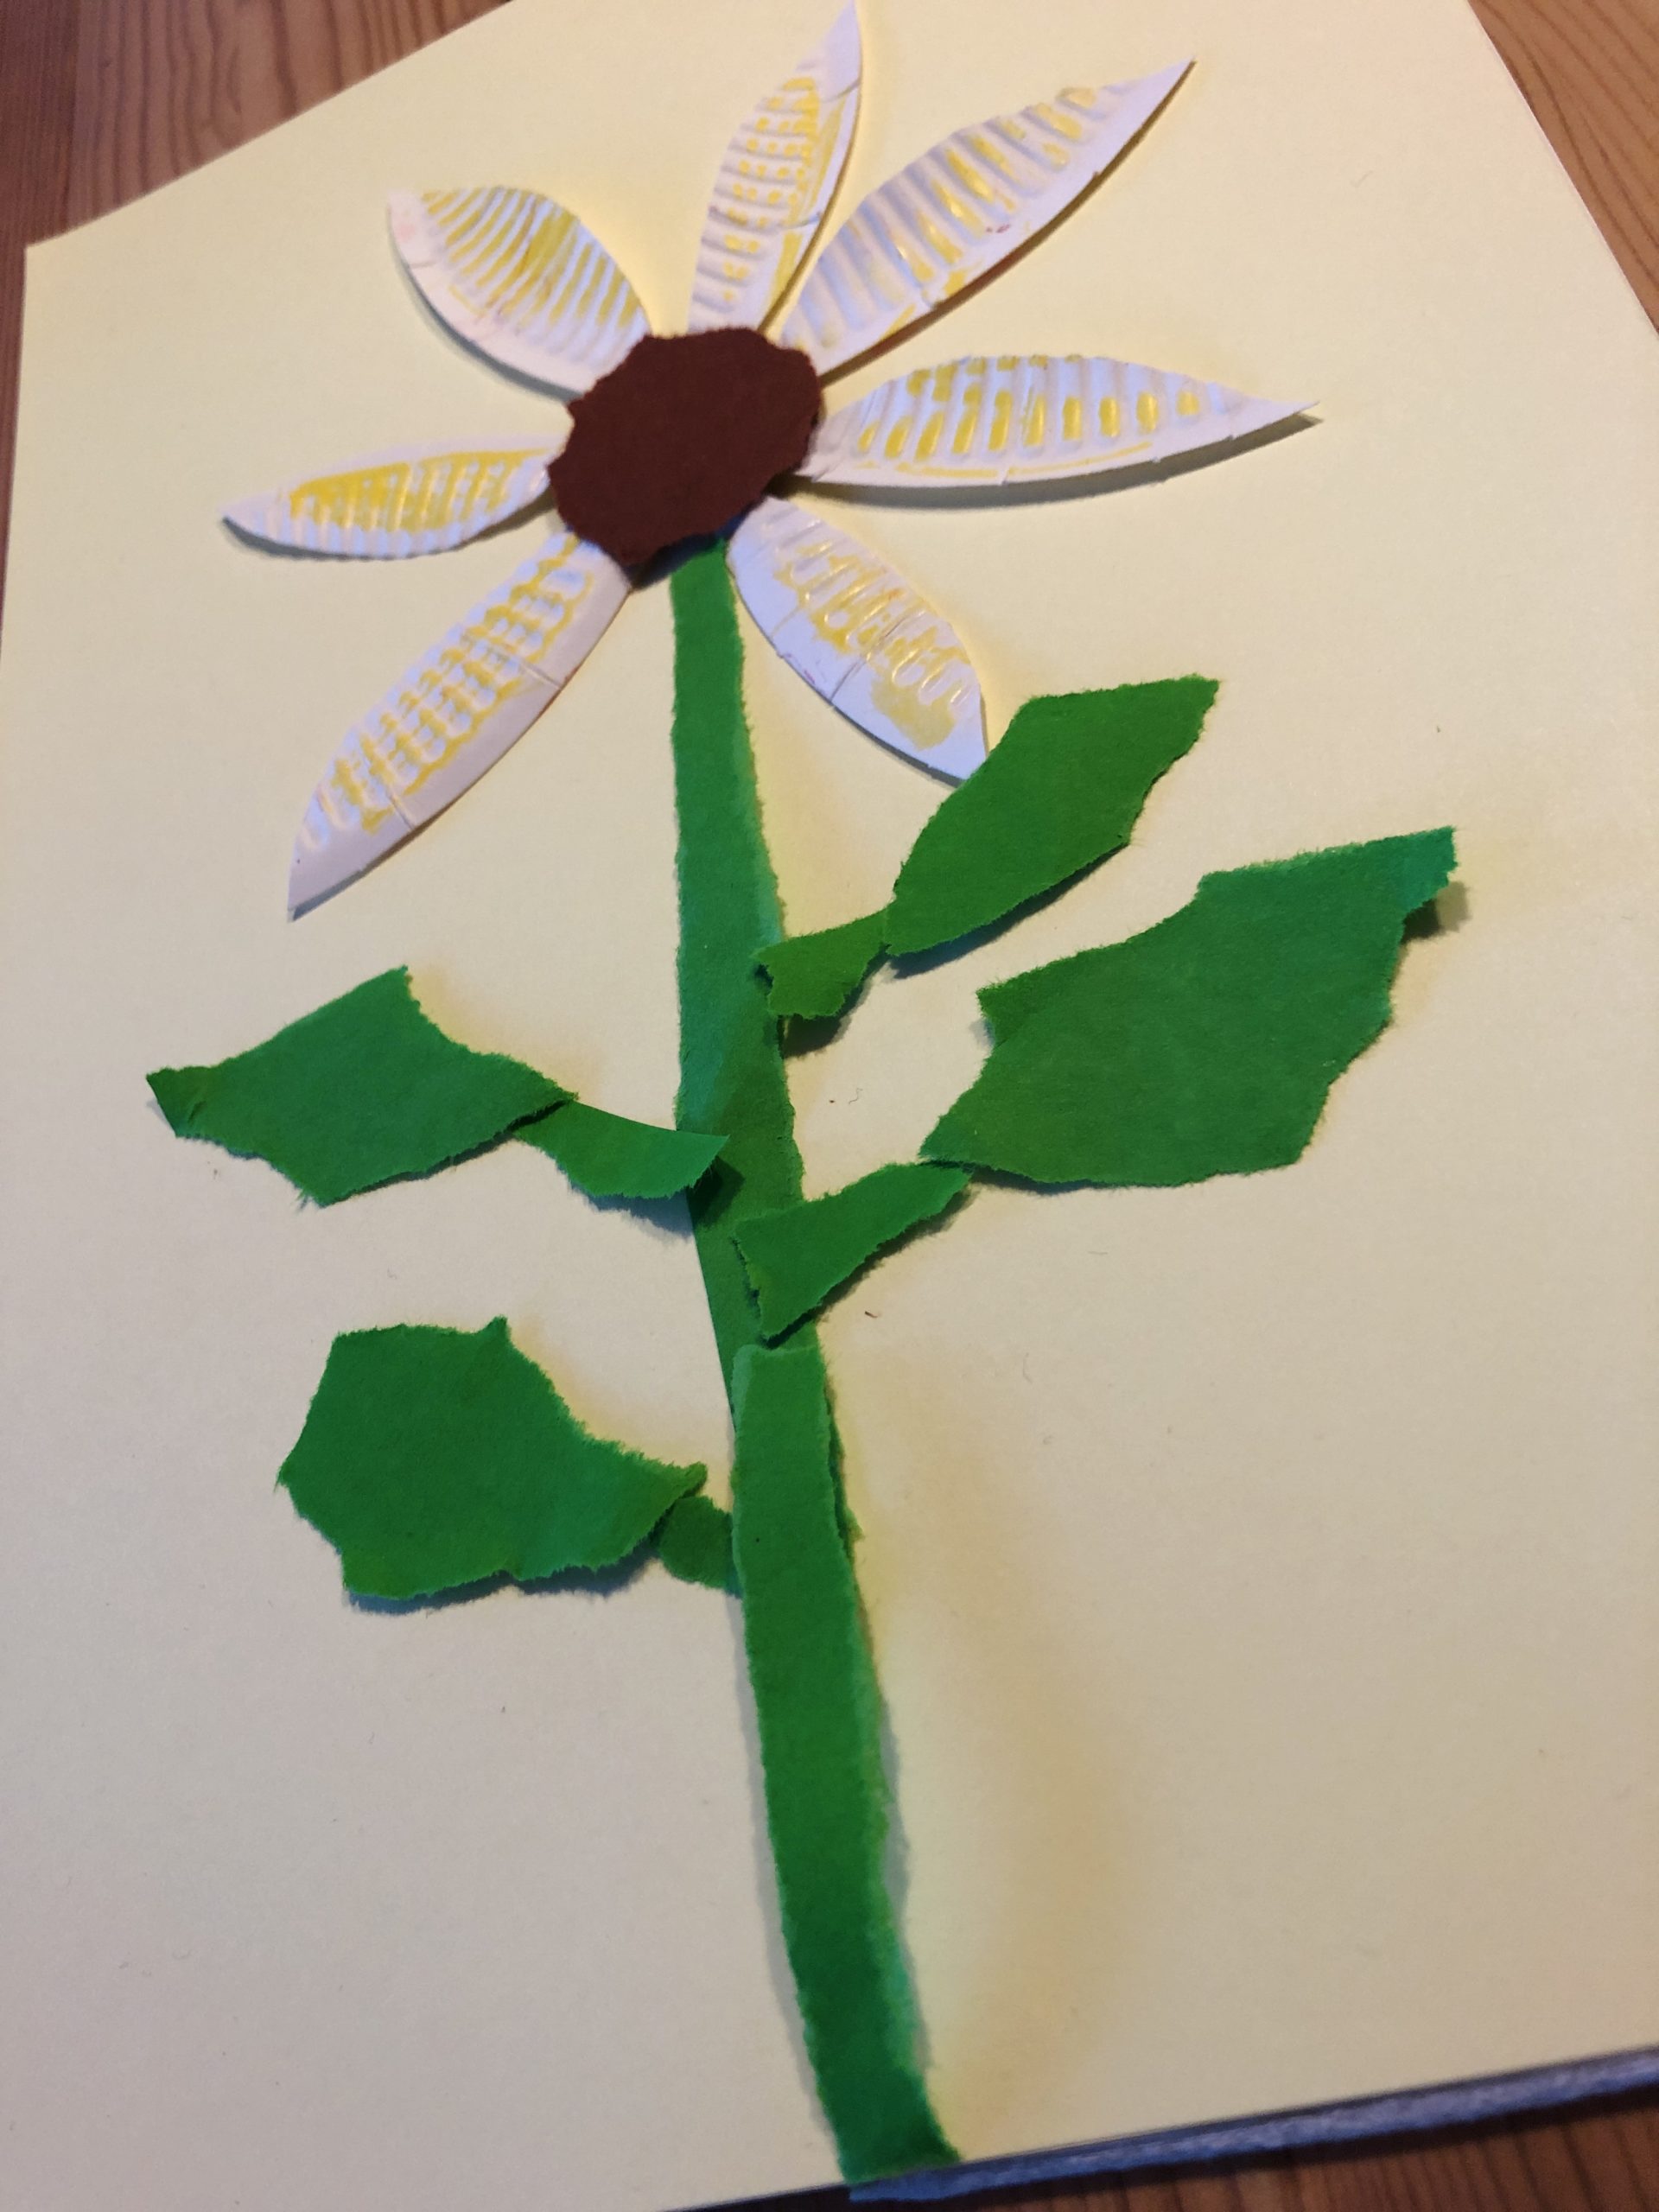 Bild zum Schritt 8 für das Bastel- und DIY-Abenteuer für Kinder: 'Legt euer weißes Papier bereit und positioniert darauf den Blütenkopf....'